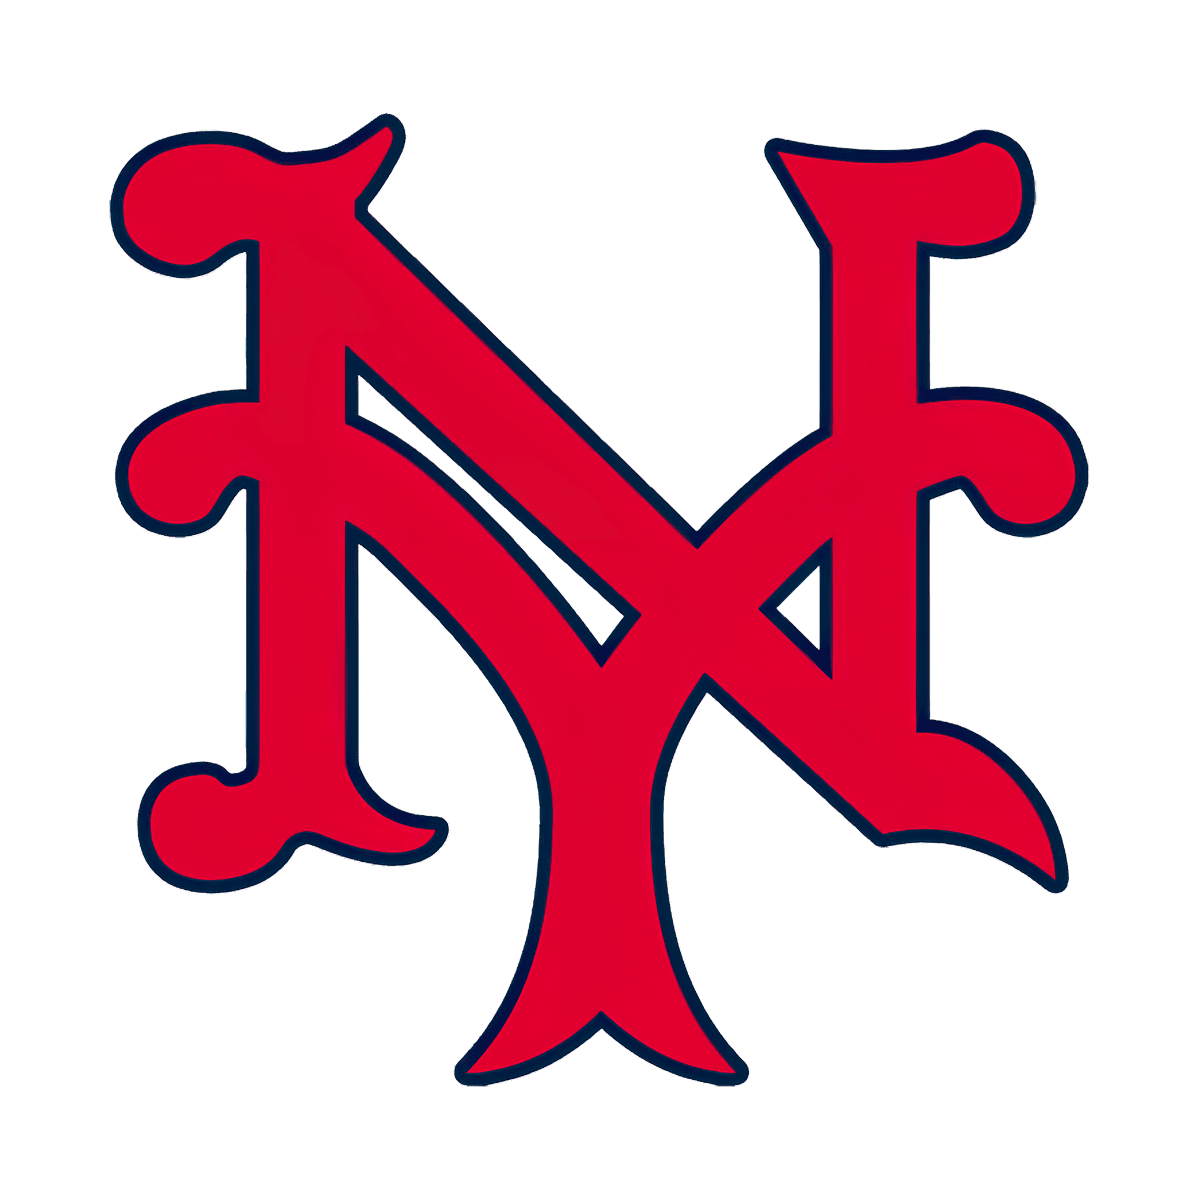 New York Giants logo 1923